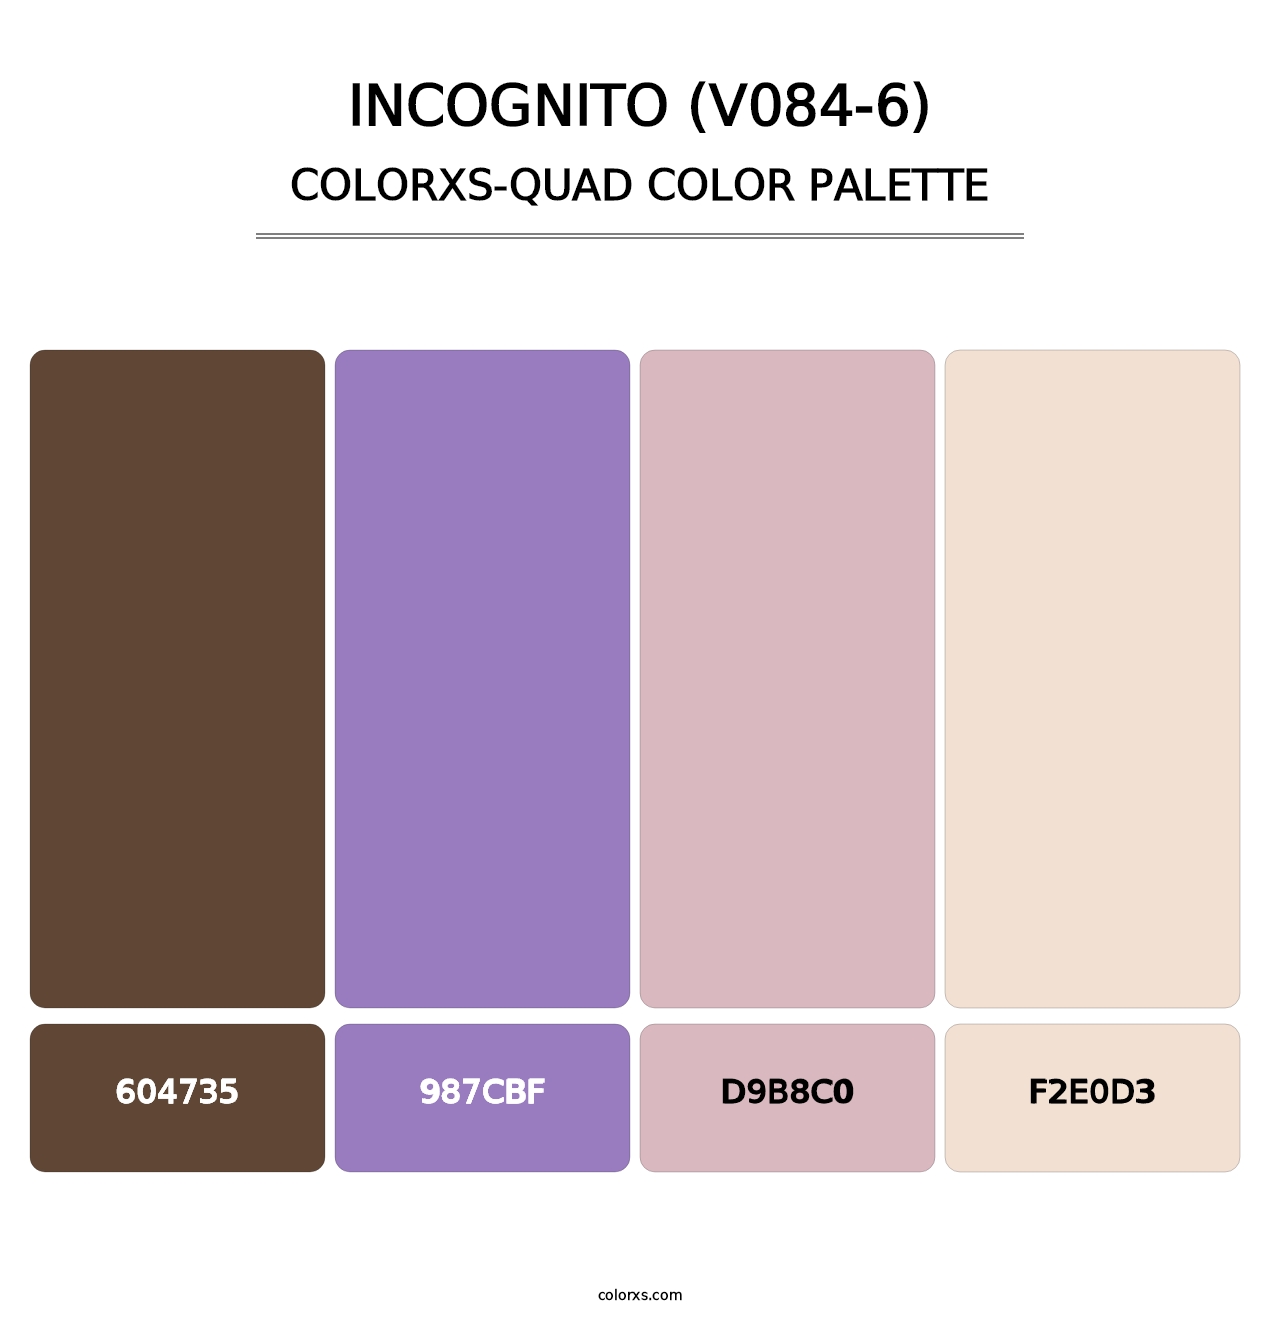 Incognito (V084-6) - Colorxs Quad Palette